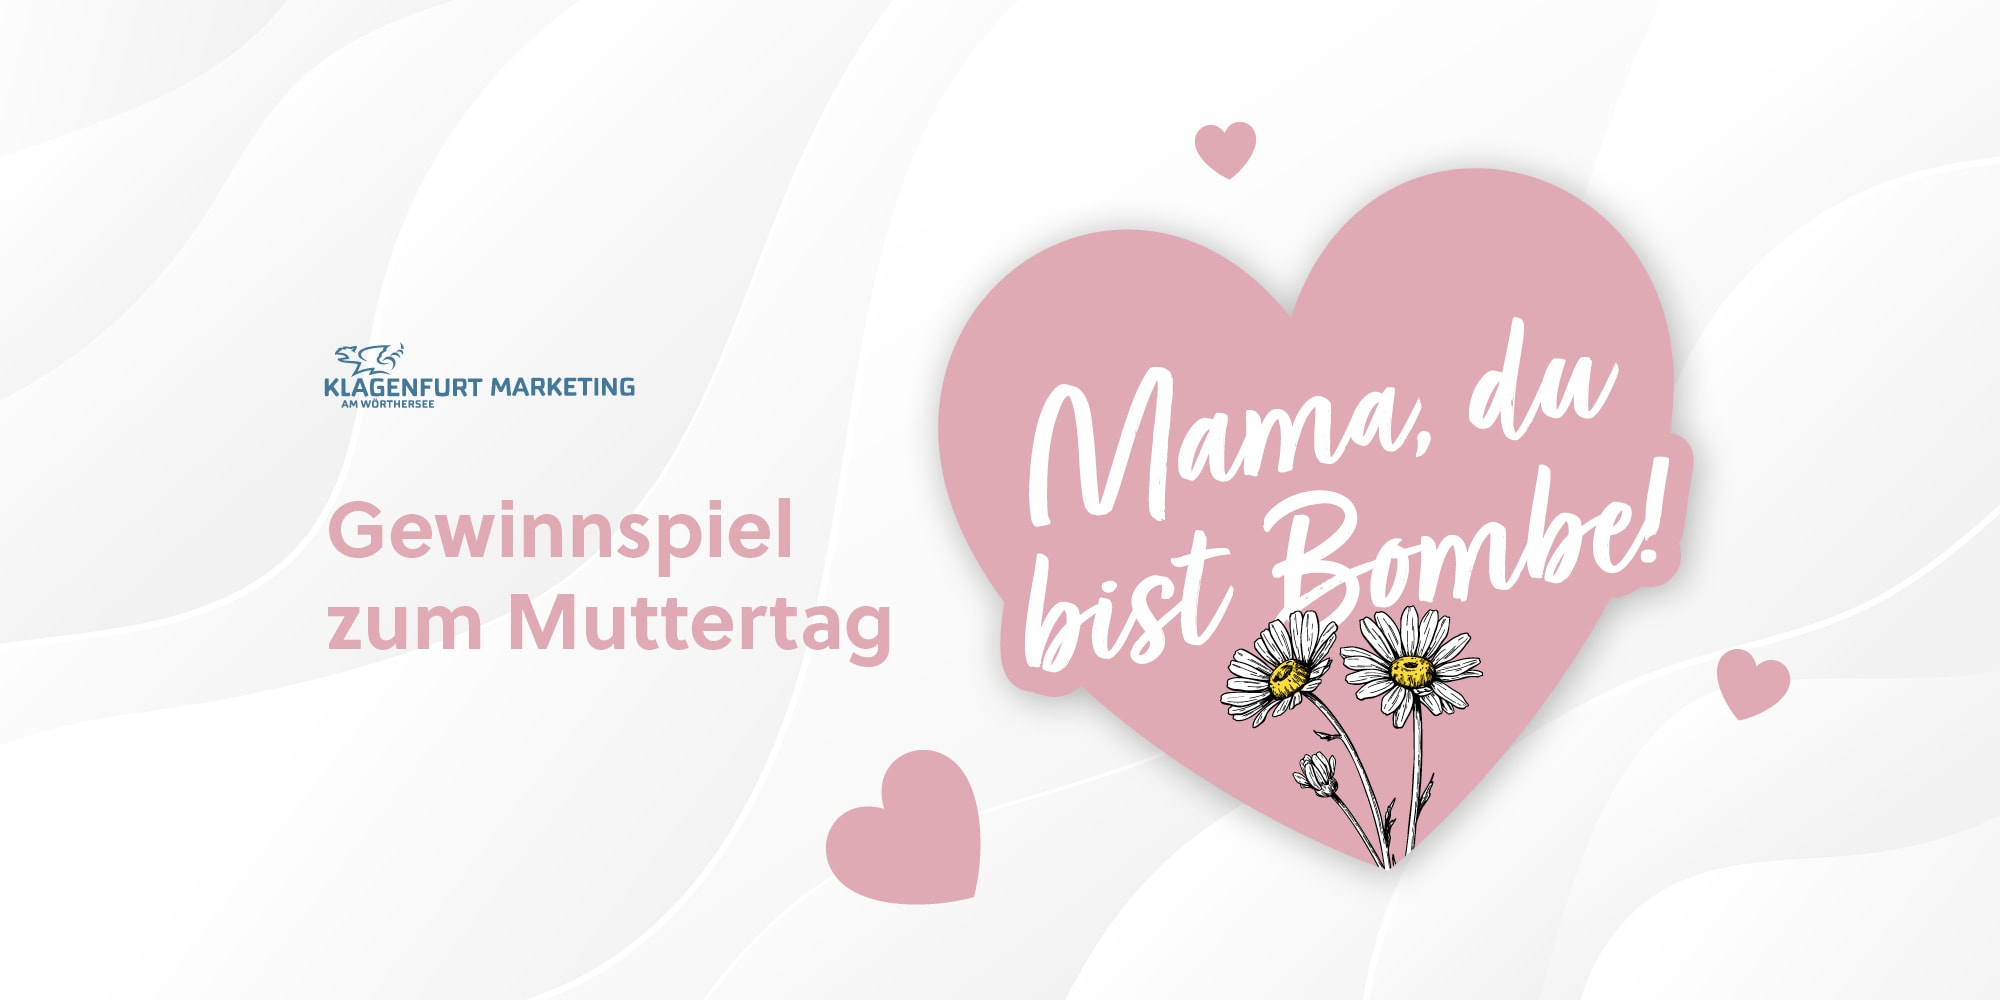 Gewinnspiel zum Muttertag mit Geschenken aus Klagenfurt